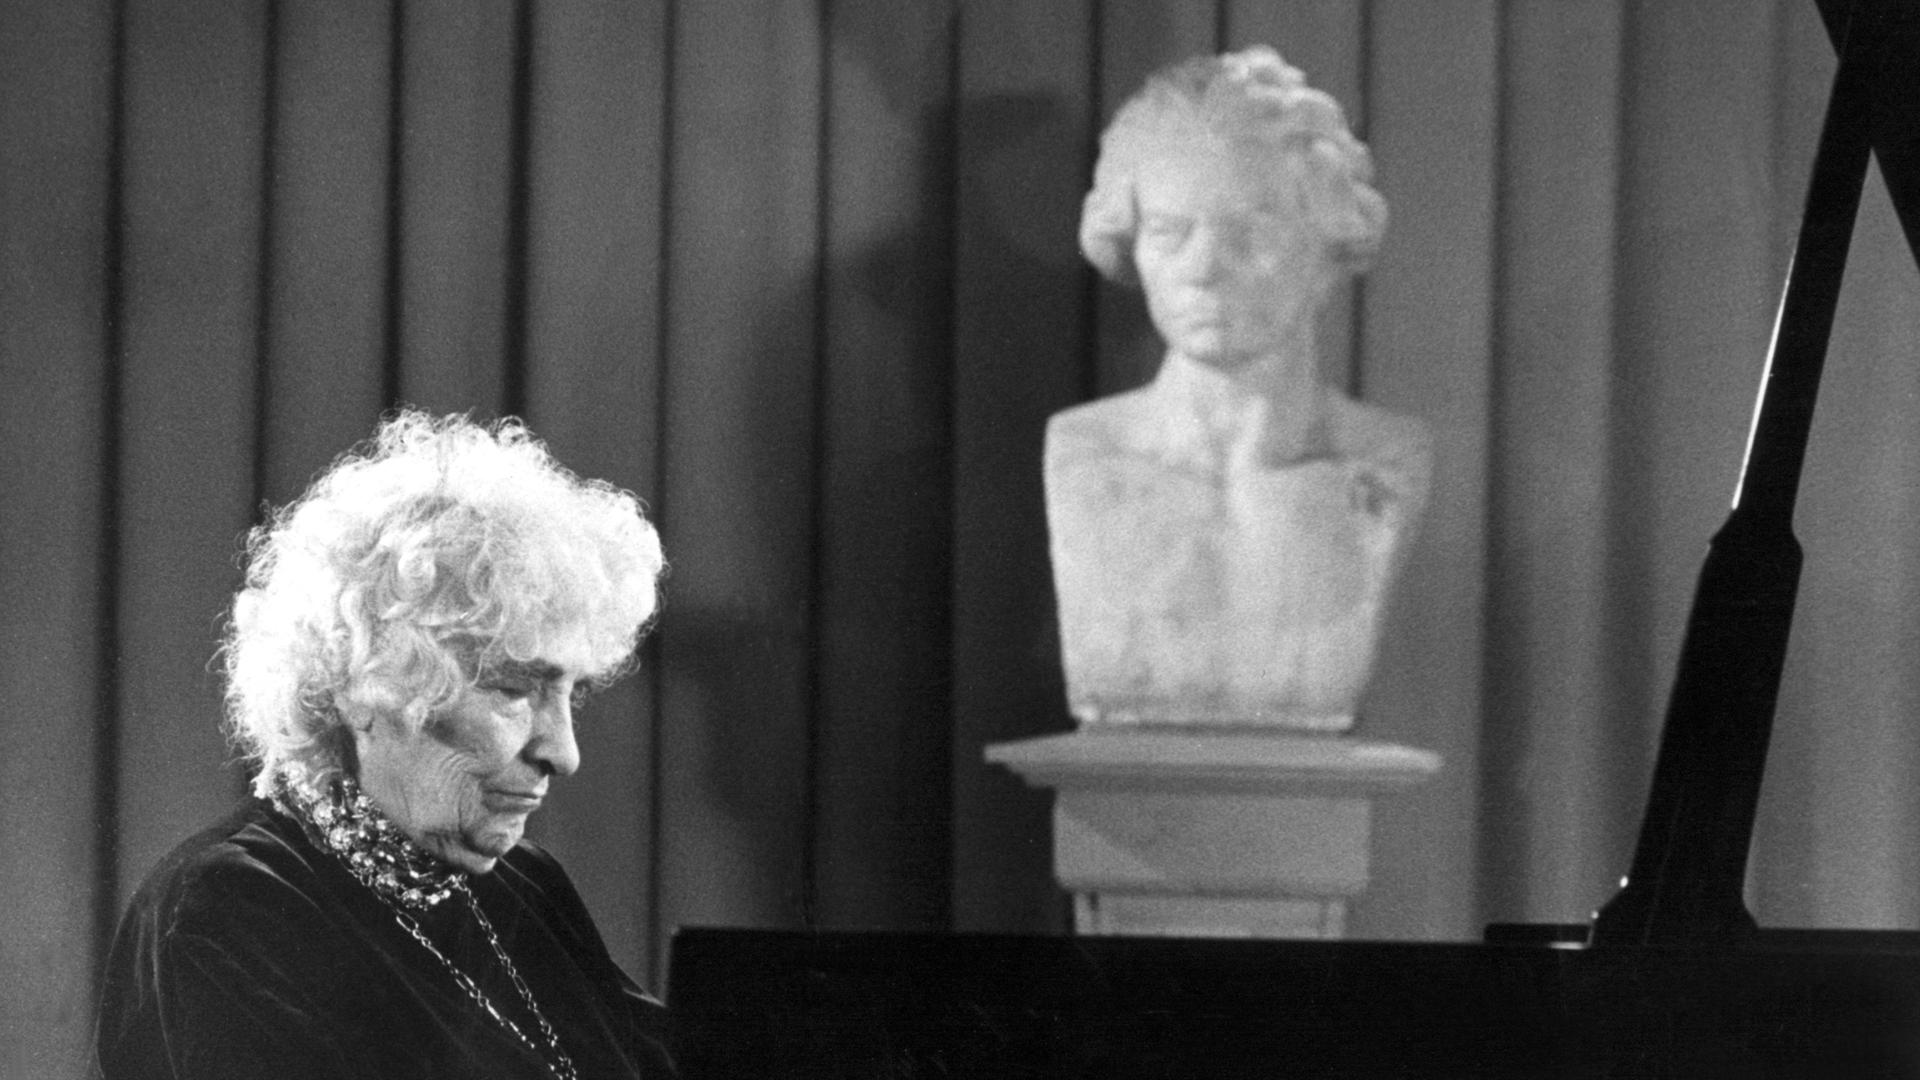 Ein schwarz-weiß Foto der Pianistin Elly Ney, zeigt sie am Klavier sitztend und spielend, während ihr eine Büste von Beethoven über die Schulter zu schauen scheint.